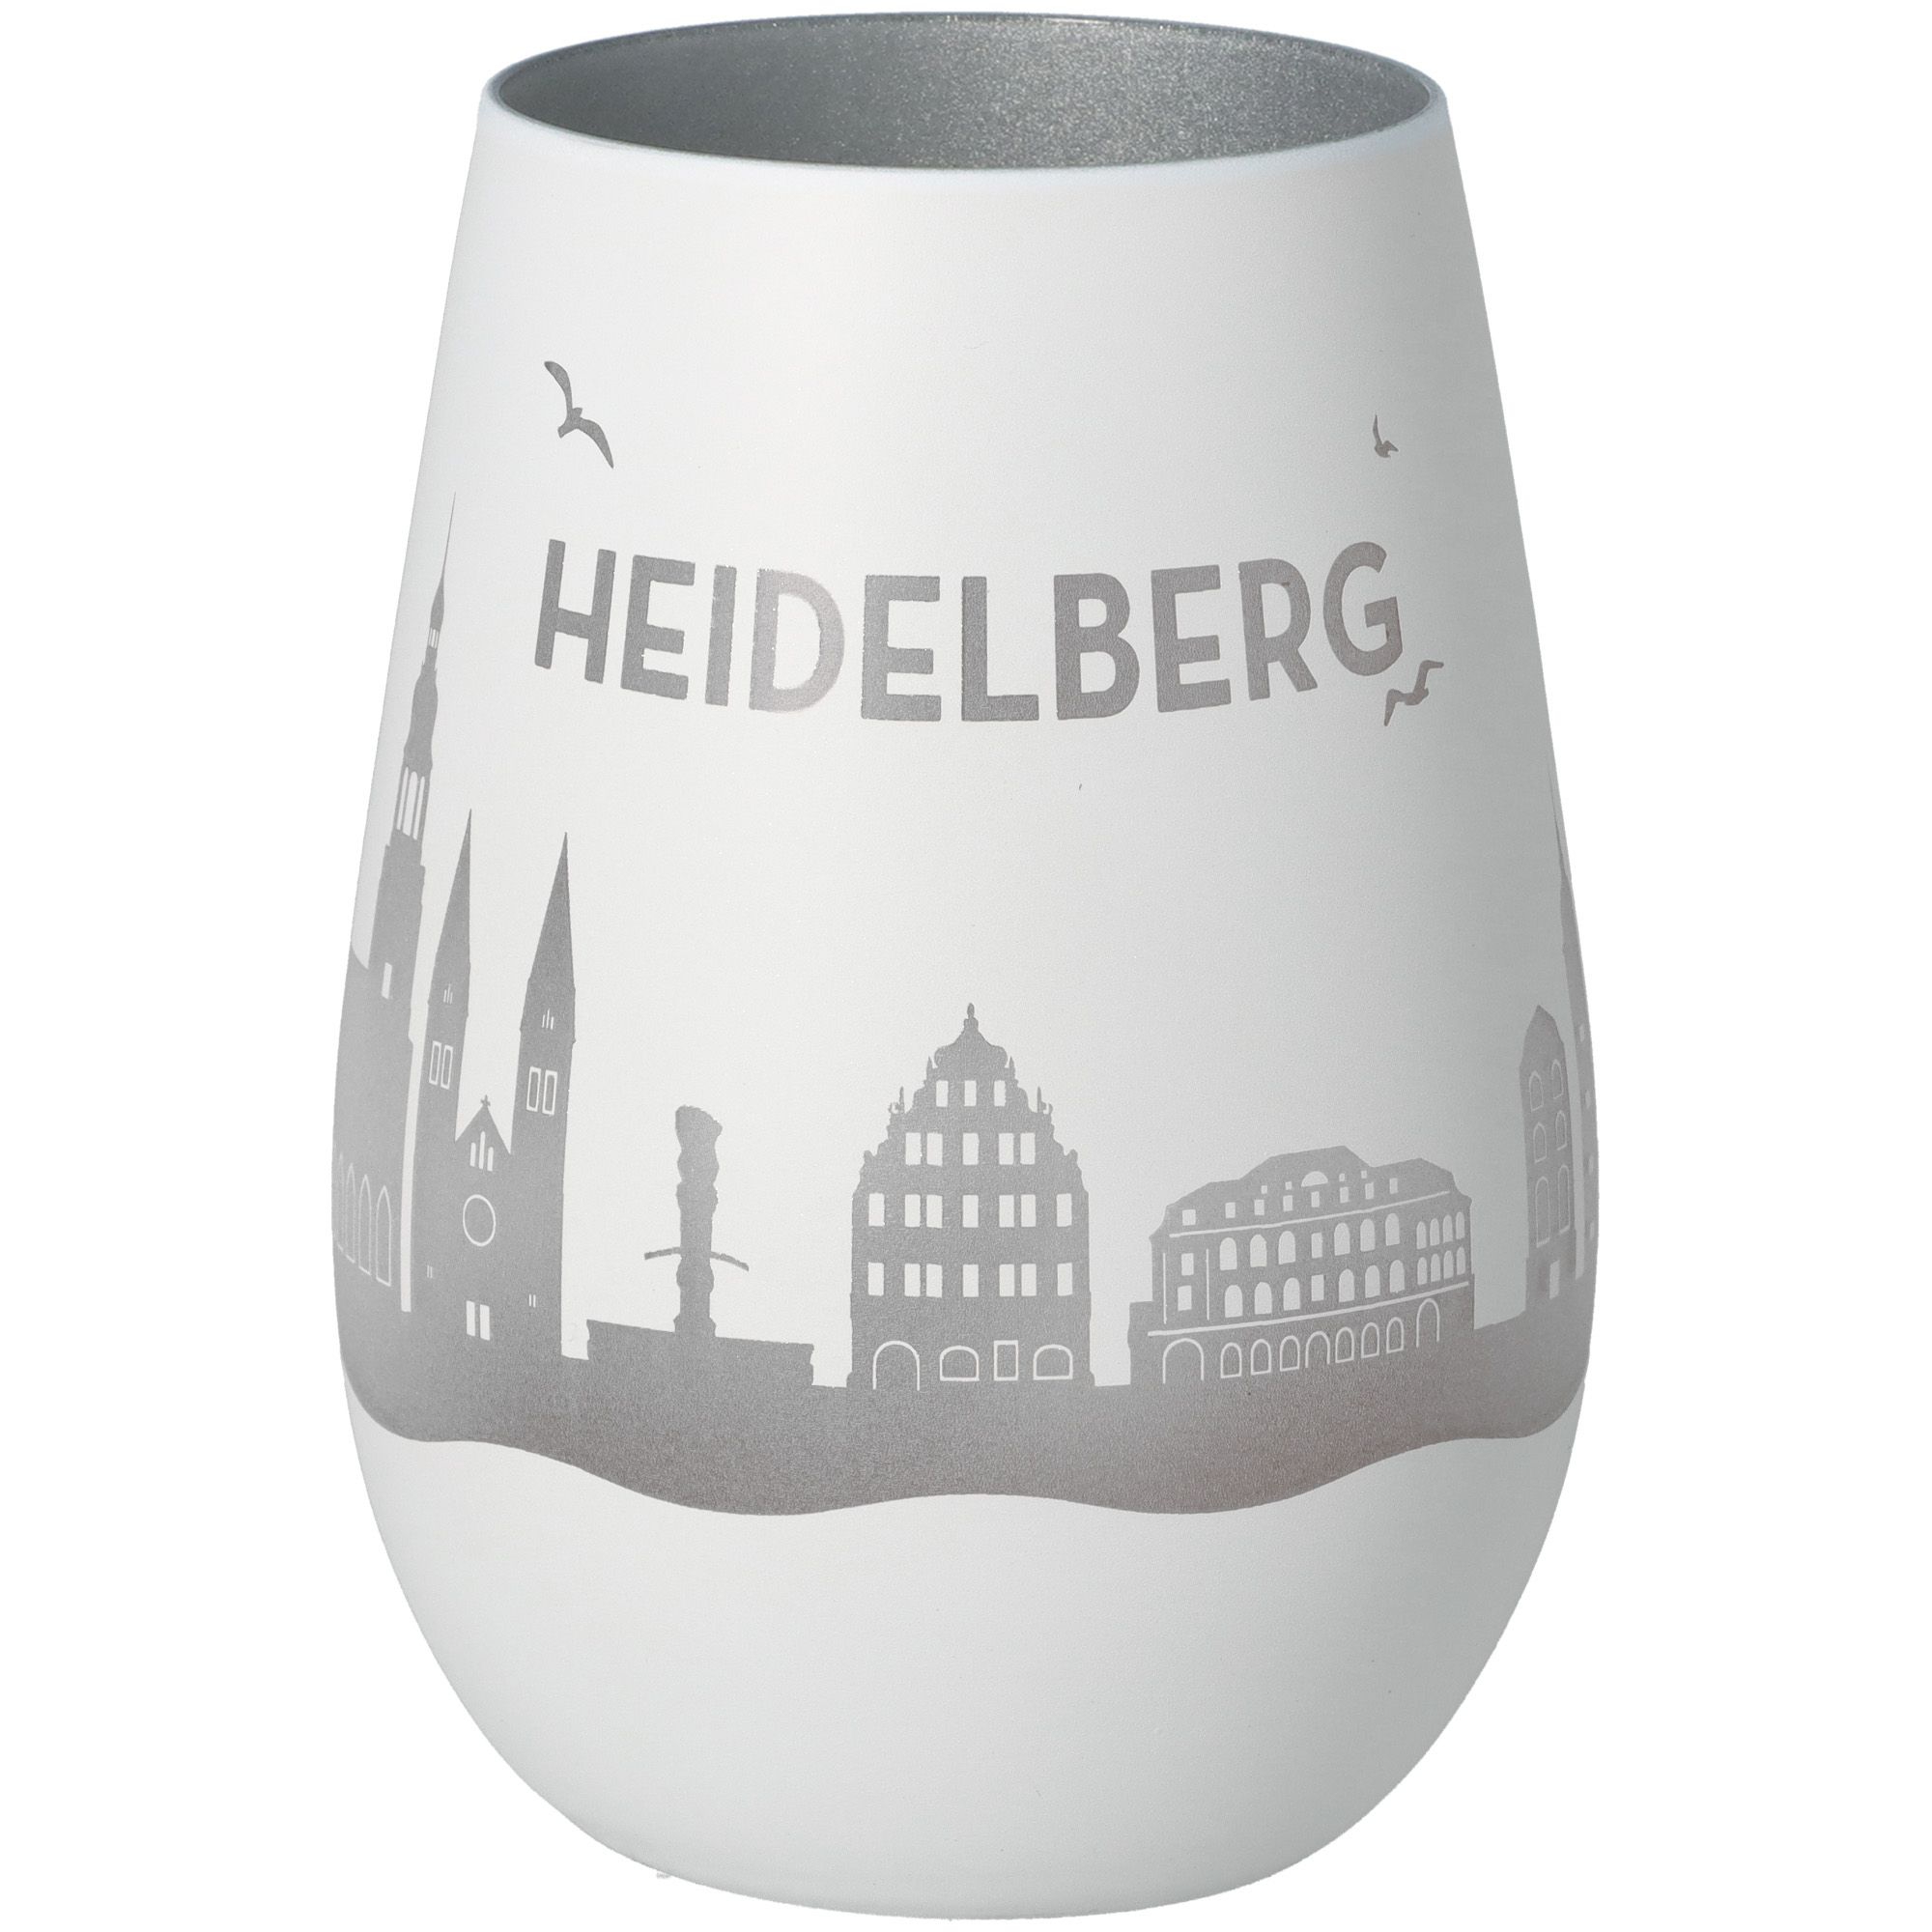 Windlicht Skyline Heidelberg Weiß/Silber